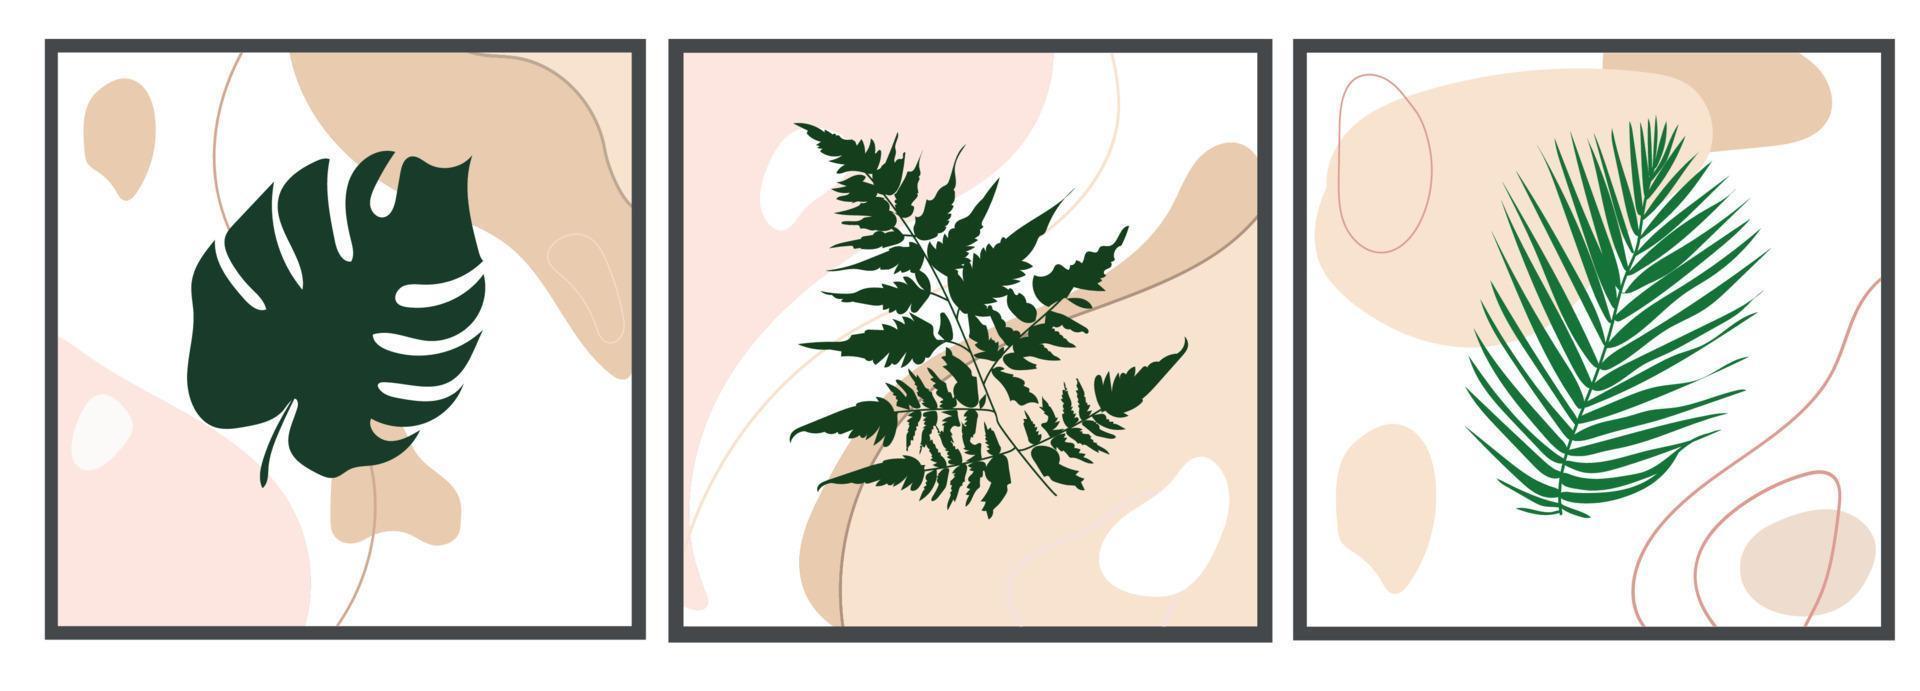 set vettoriale di arte della parete botanica. diverse sagome disegnate di foglie tropicali su sfondo astratto. disegno astratto di piante per stampa, copertina, carta da parati, immagini murali minimaliste e naturali.